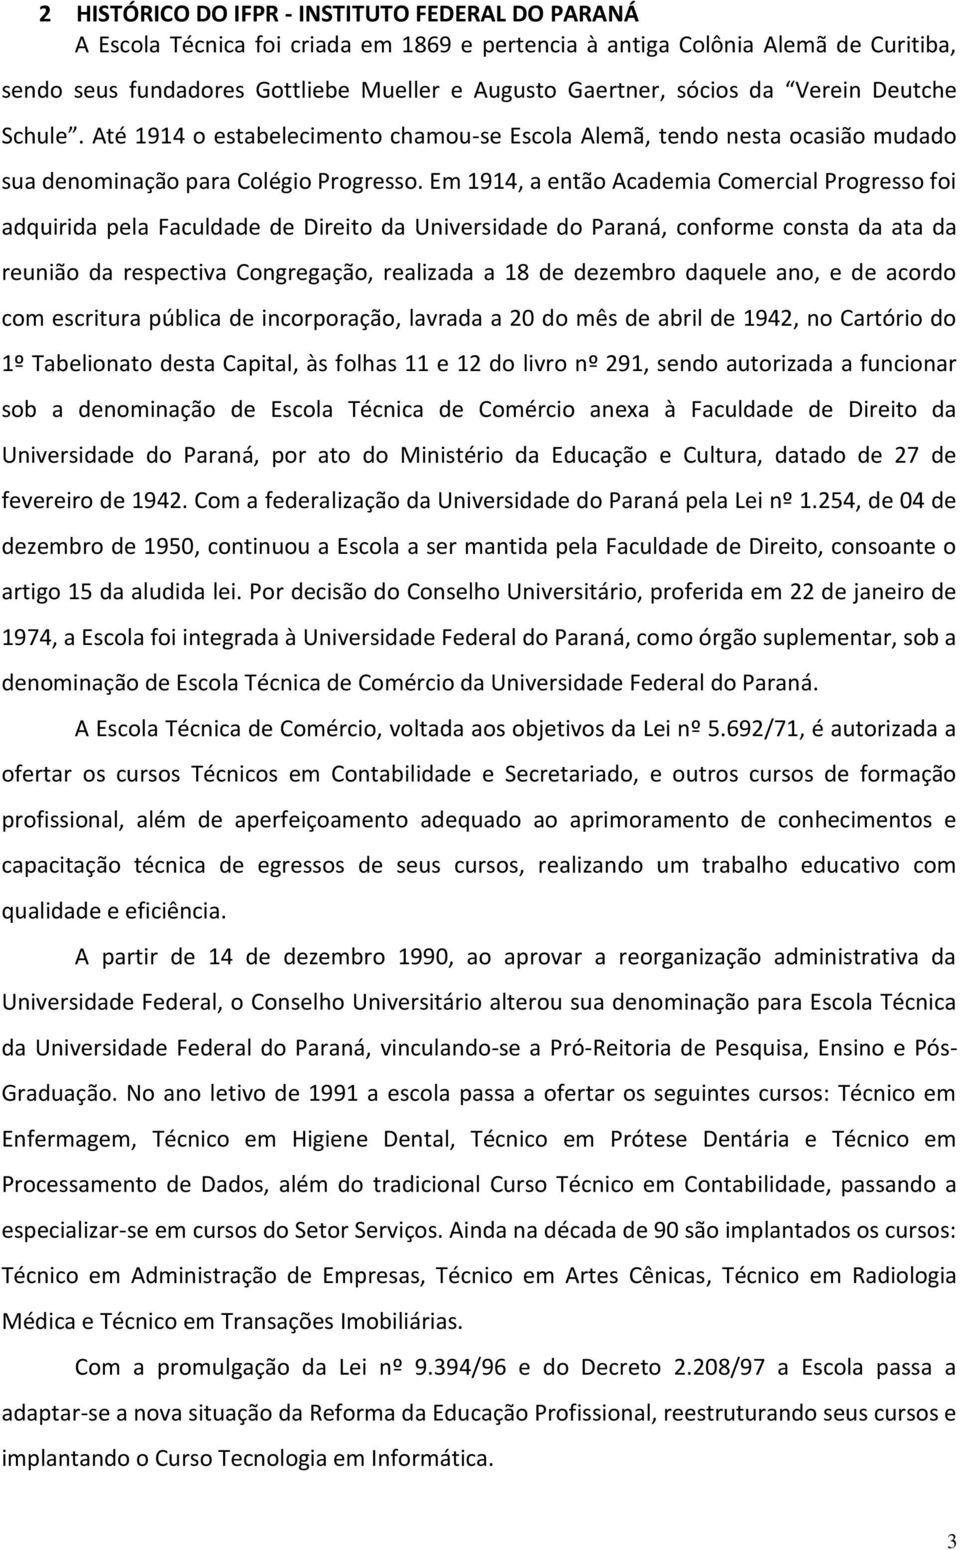 Em 1914, a então Academia Comercial Progresso foi adquirida pela Faculdade de Direito da Universidade do Paraná, conforme consta da ata da reunião da respectiva Congregação, realizada a 18 de